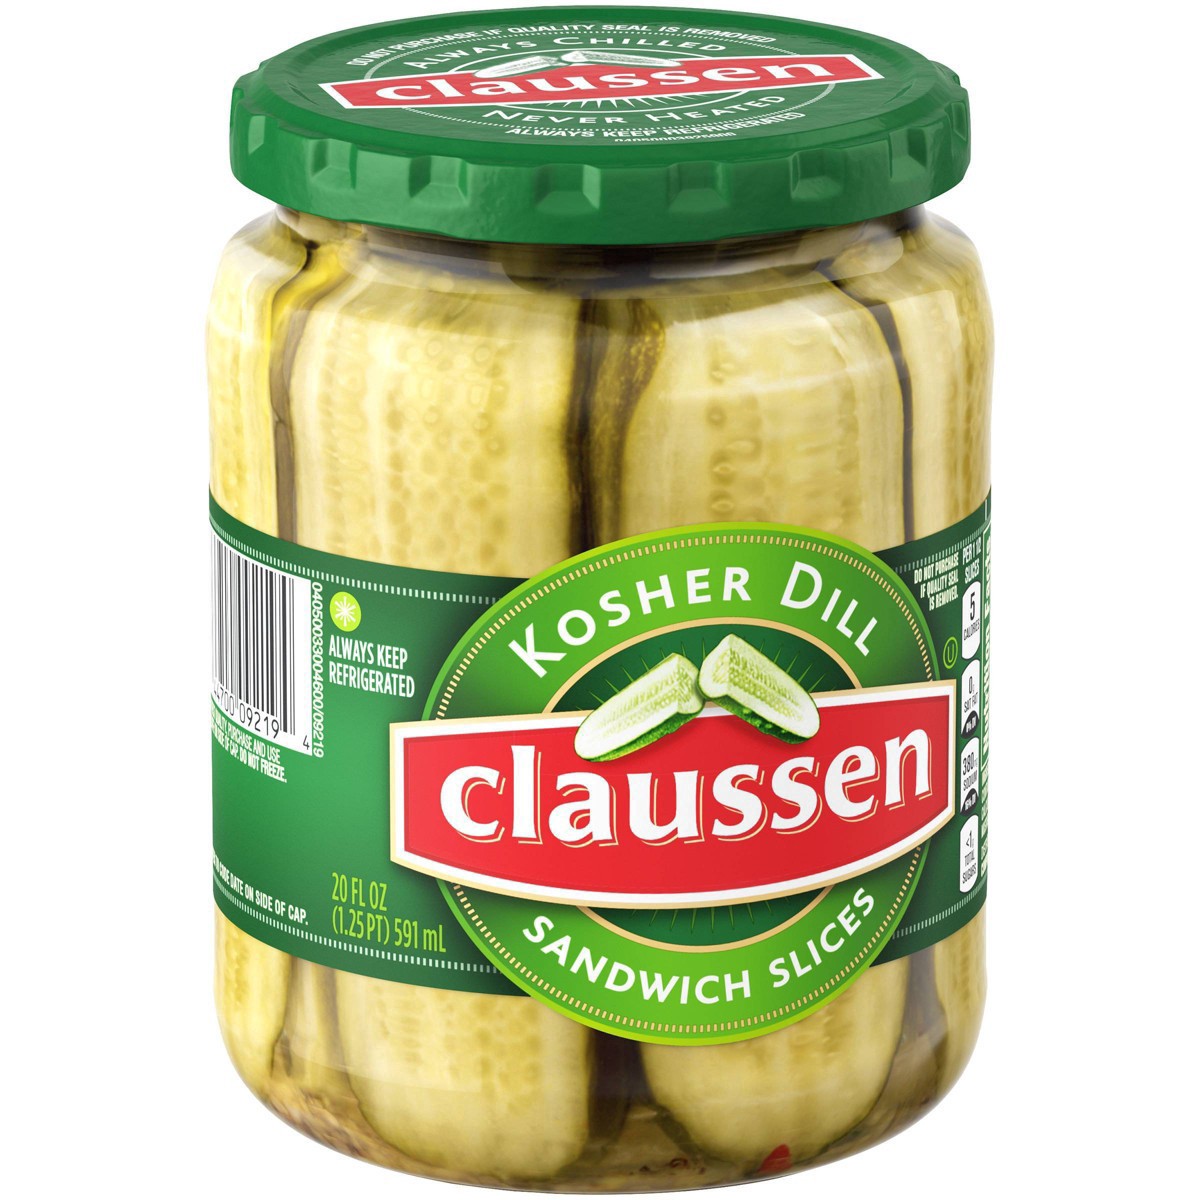 slide 118 of 144, Claussen Kosher Dill Pickle Sandwich Slices, 20 fl. oz. Jar, 20 fl oz